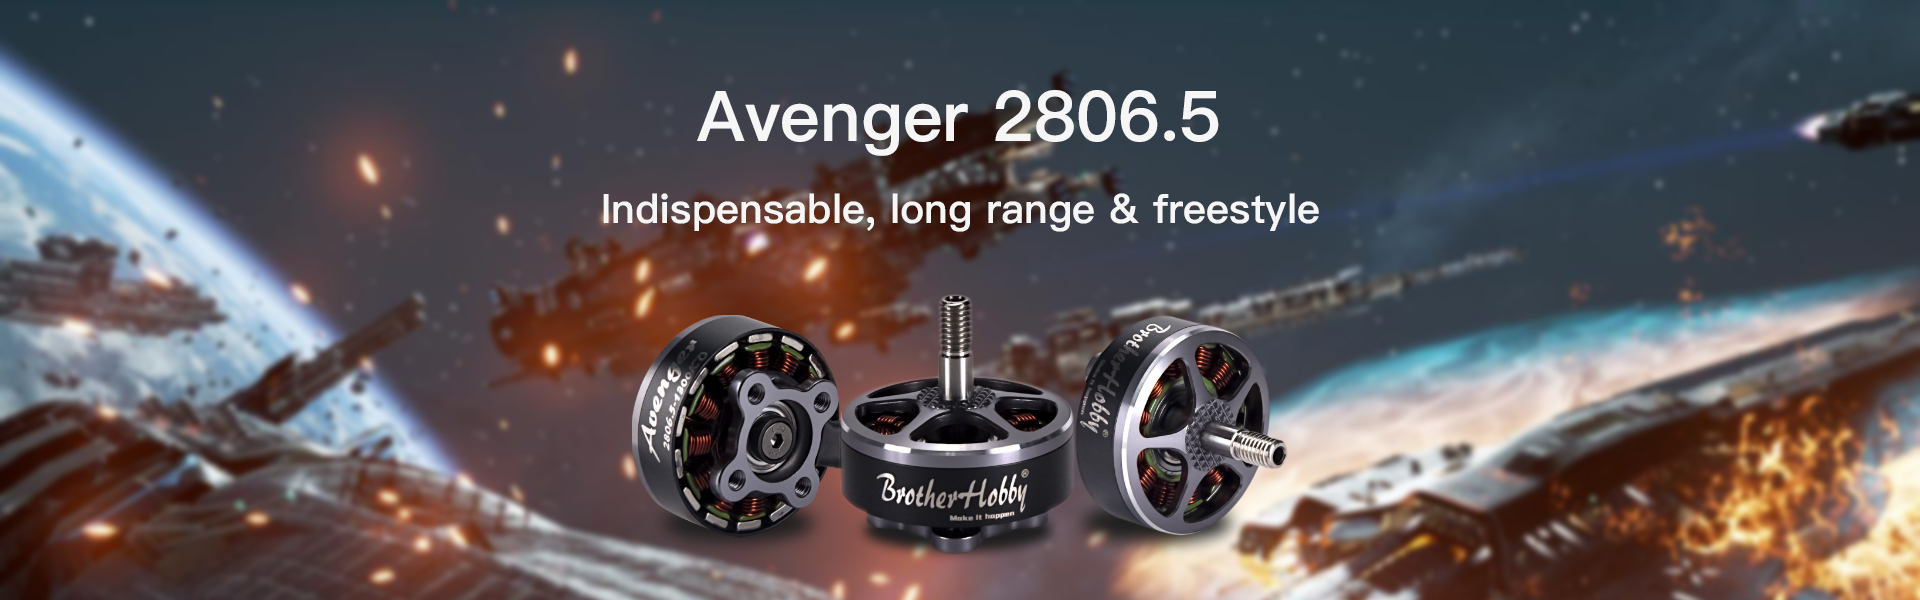 Avenger 2806.5 Motor